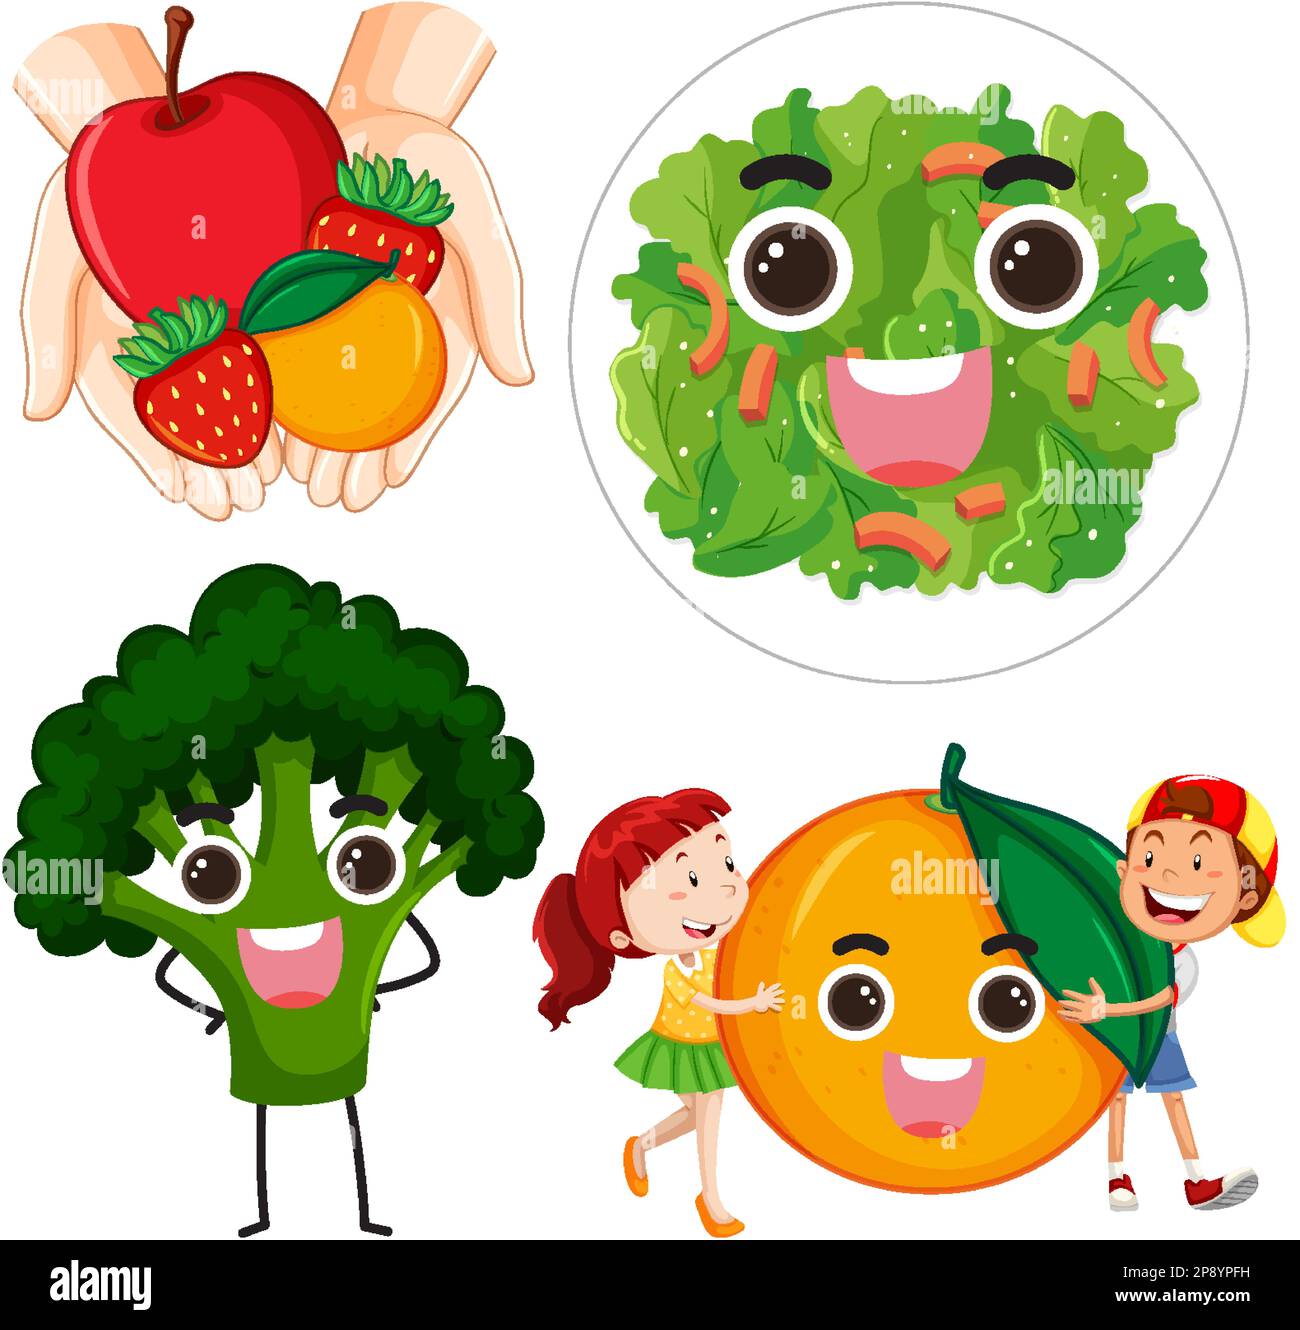 Ensemble de personnages de dessin animé fruits et légumes avec illustration du visage smiley Illustration de Vecteur